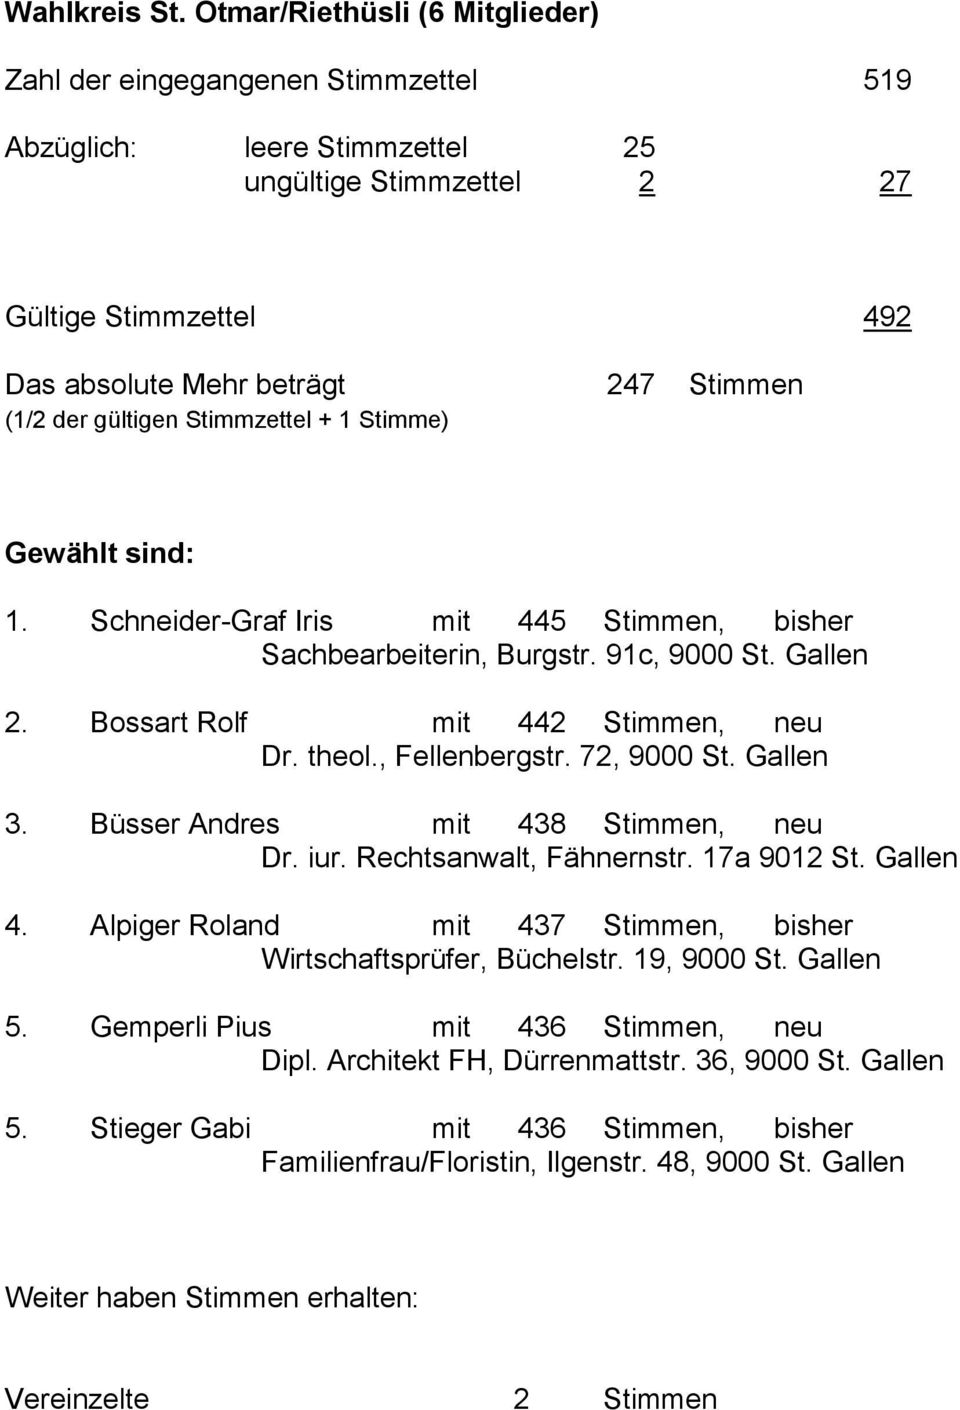 Gewählt sind: 1. Schneider-Graf Iris mit 445 Stimmen, bisher Sachbearbeiterin, Burgstr. 91c, 9000 St. Gallen 2. Bossart Rolf mit 442 Stimmen, neu Dr. theol., Fellenbergstr. 72, 9000 St. Gallen 3.